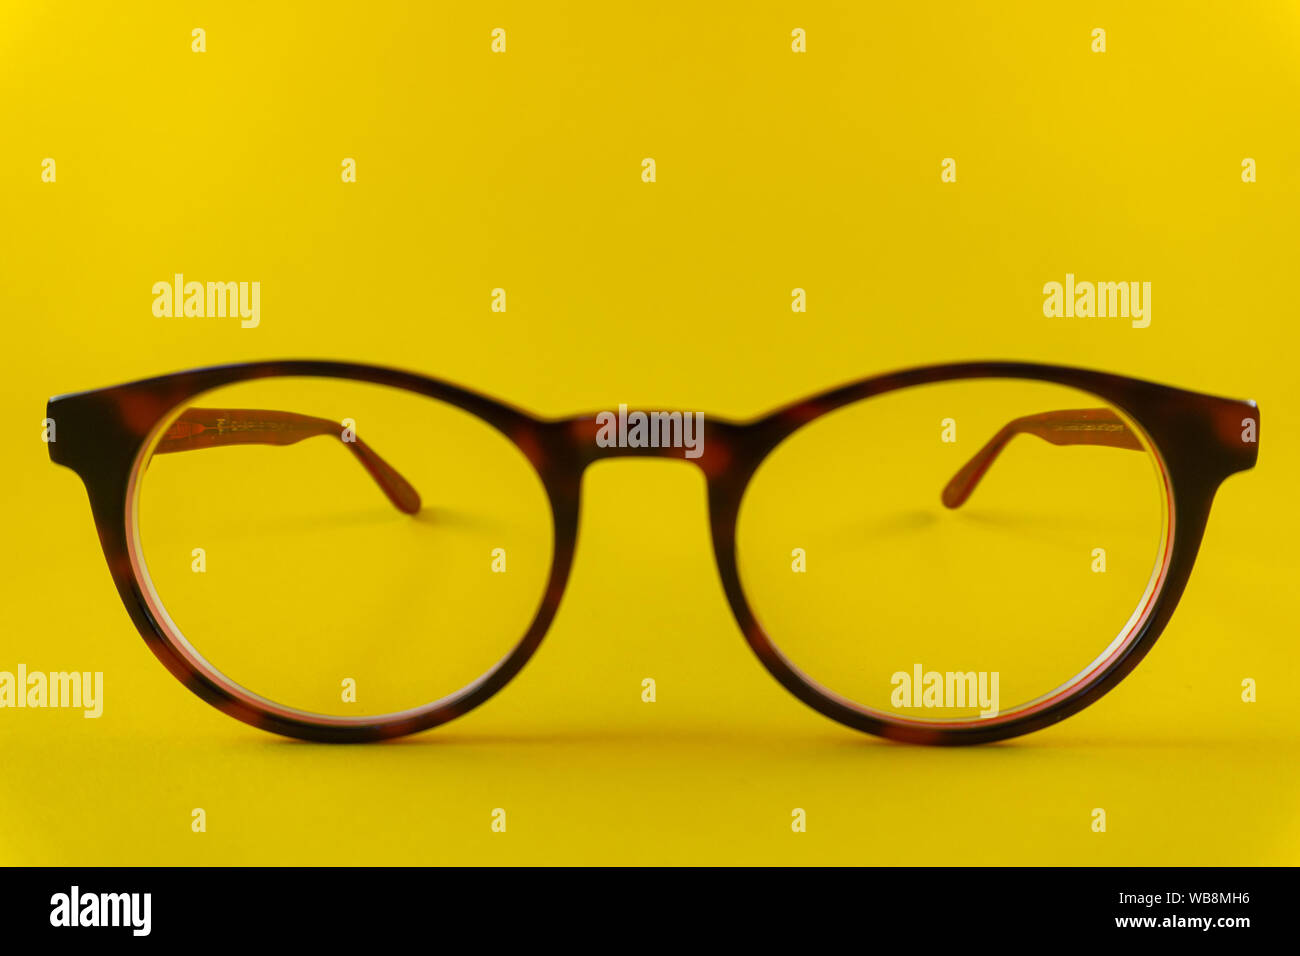 Rouge-brun, lunettes rondes sur fond jaune Banque D'Images